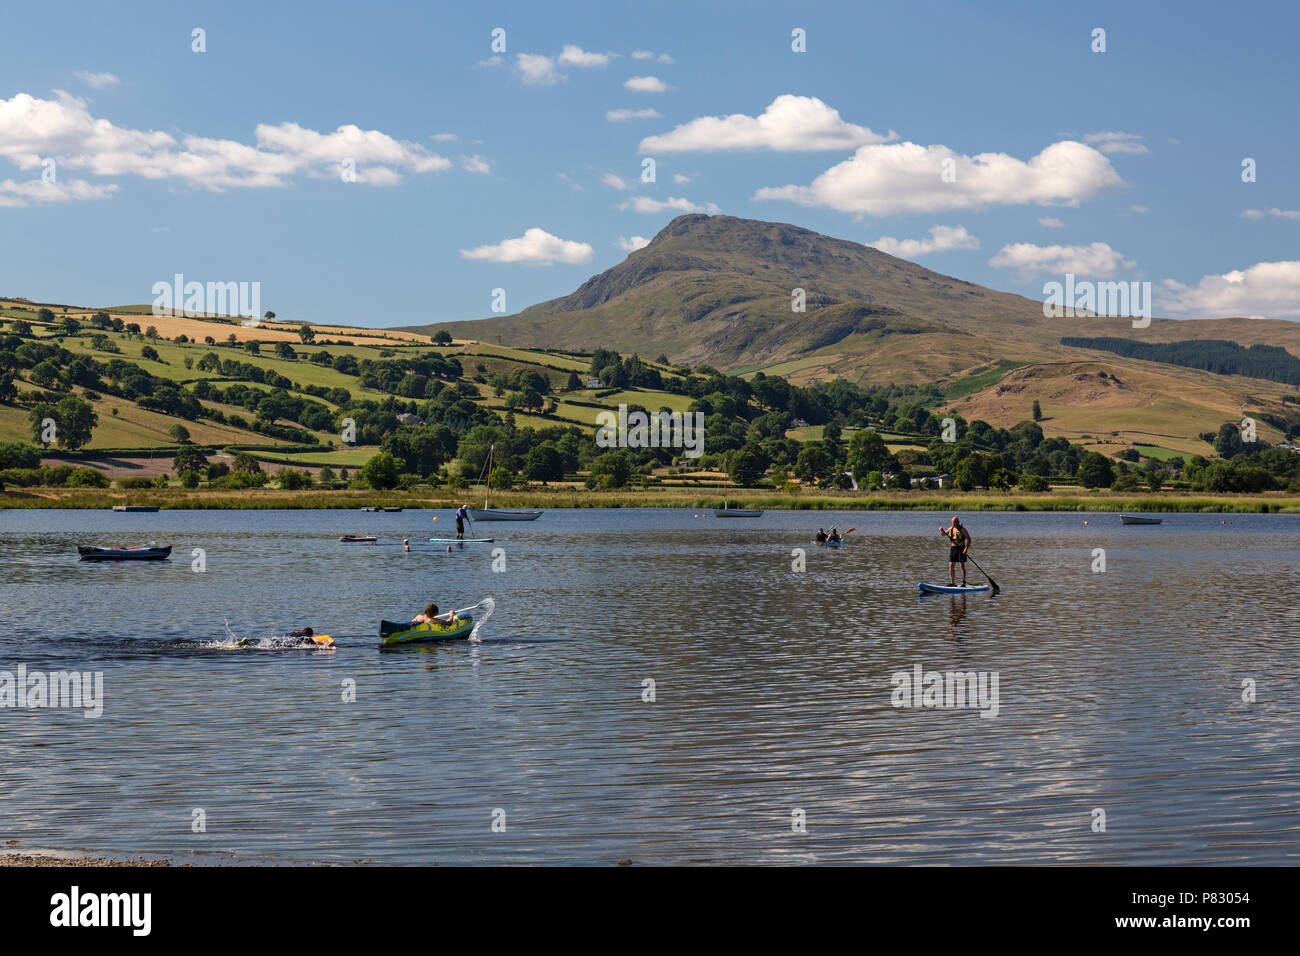 Le persone che hanno preso parte a vari sport acquatici sul lago Bala, o Llyn Tegid in Gwynedd, metà del Galles, UK. Foto Stock